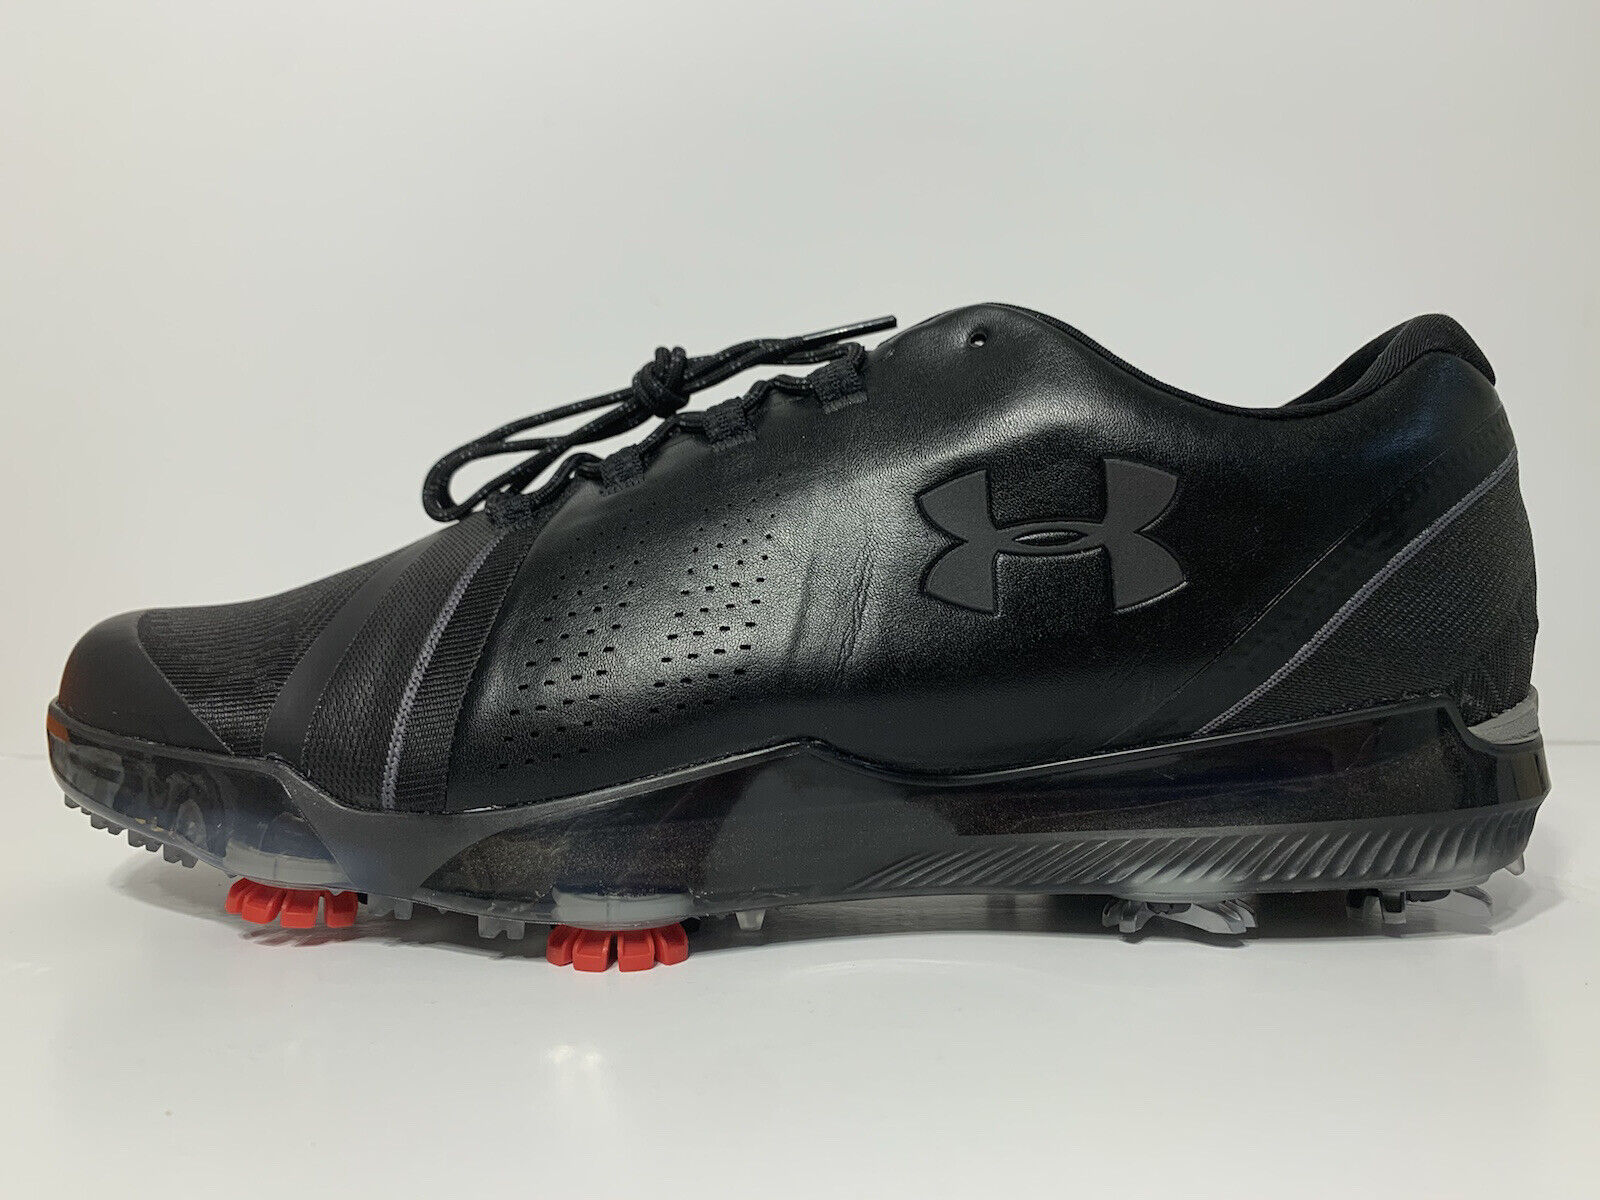 Under Armour Spieth 3 Golf Shoes Black Carbon  Fiber Men’s Size 12 3021204 001